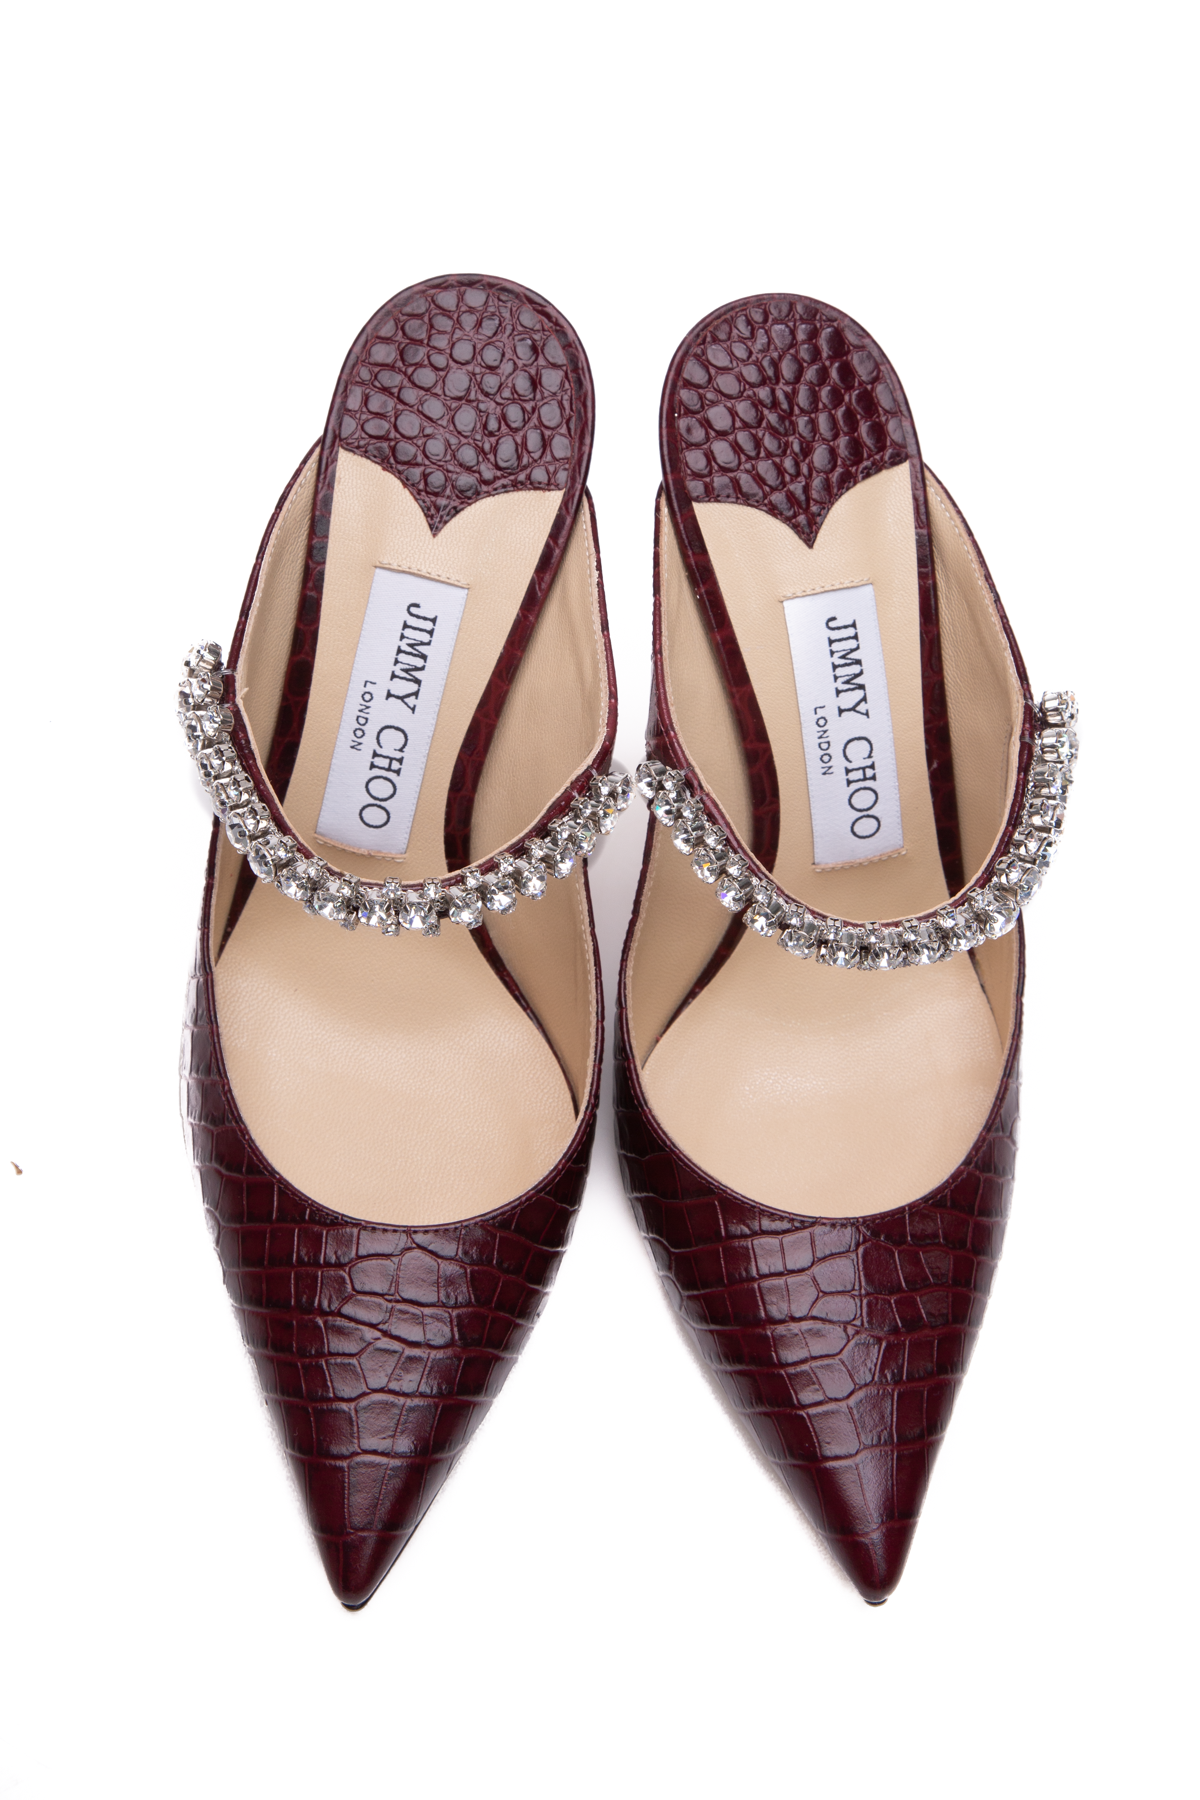 $995 Louis Vuitton Men's Brown Leather Sandals Sz LV 8 US 9